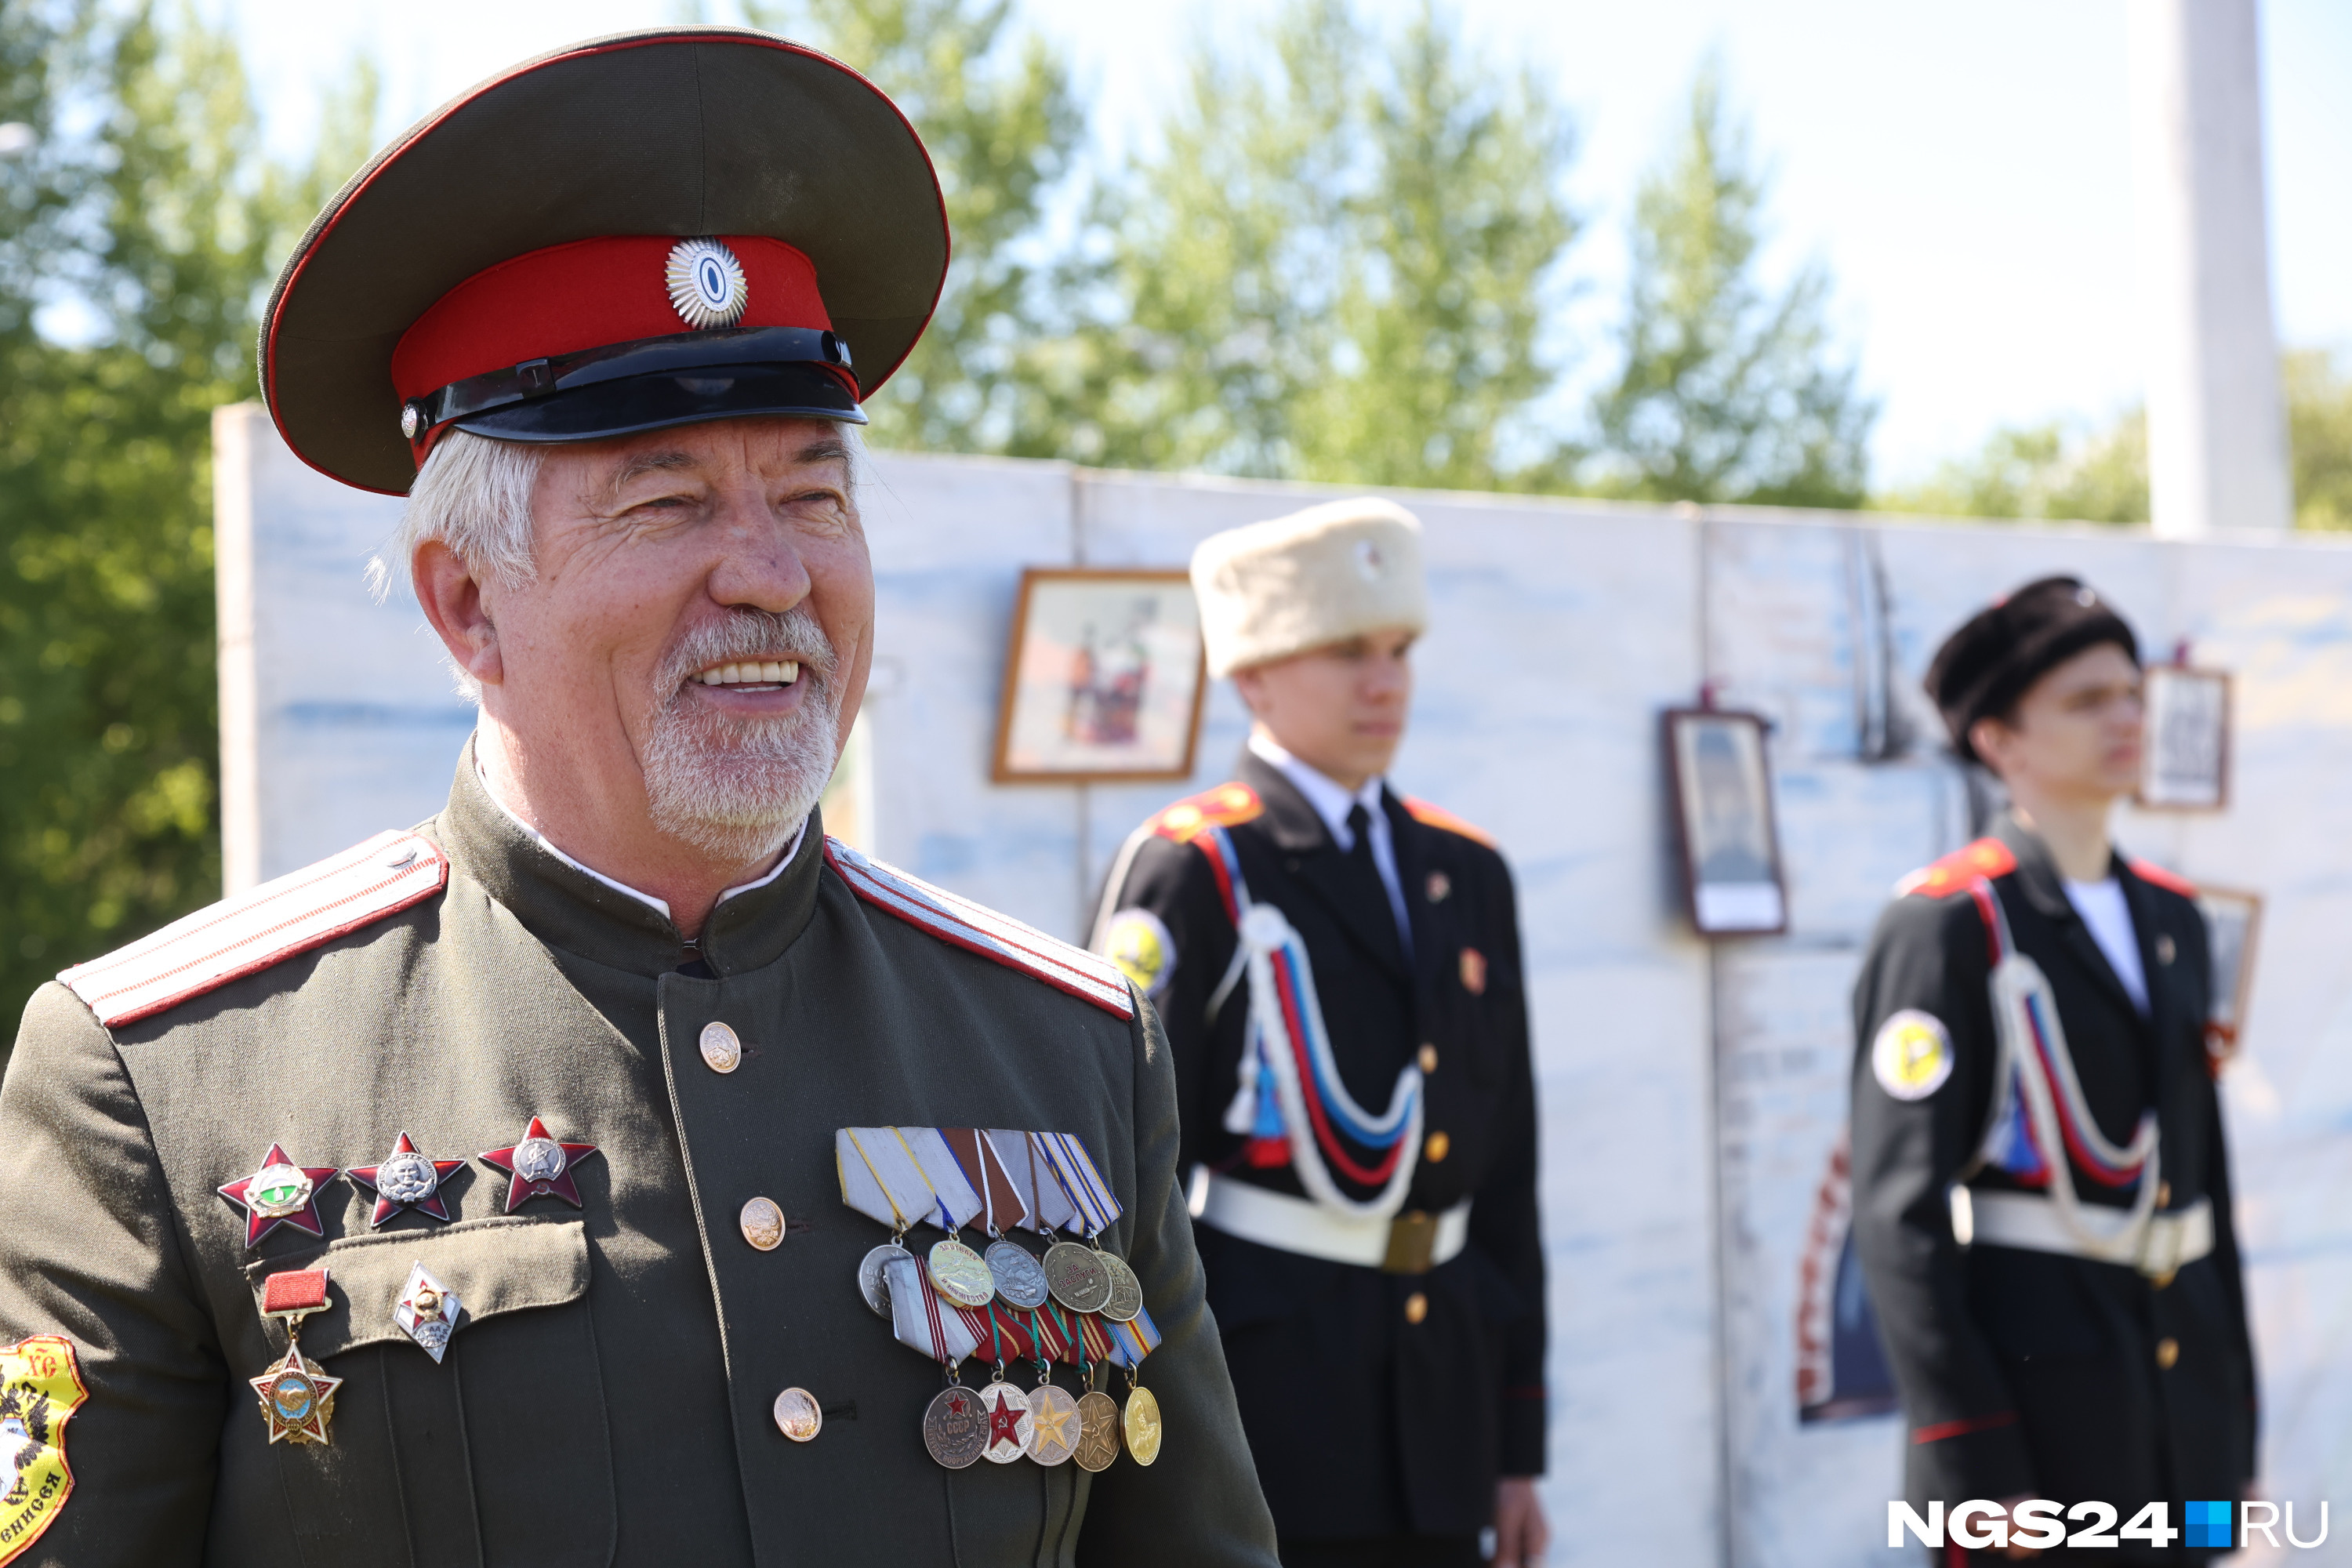 Старшие казаки говорят о важности передать свои традиции подрастающему поколению — это основная ценность